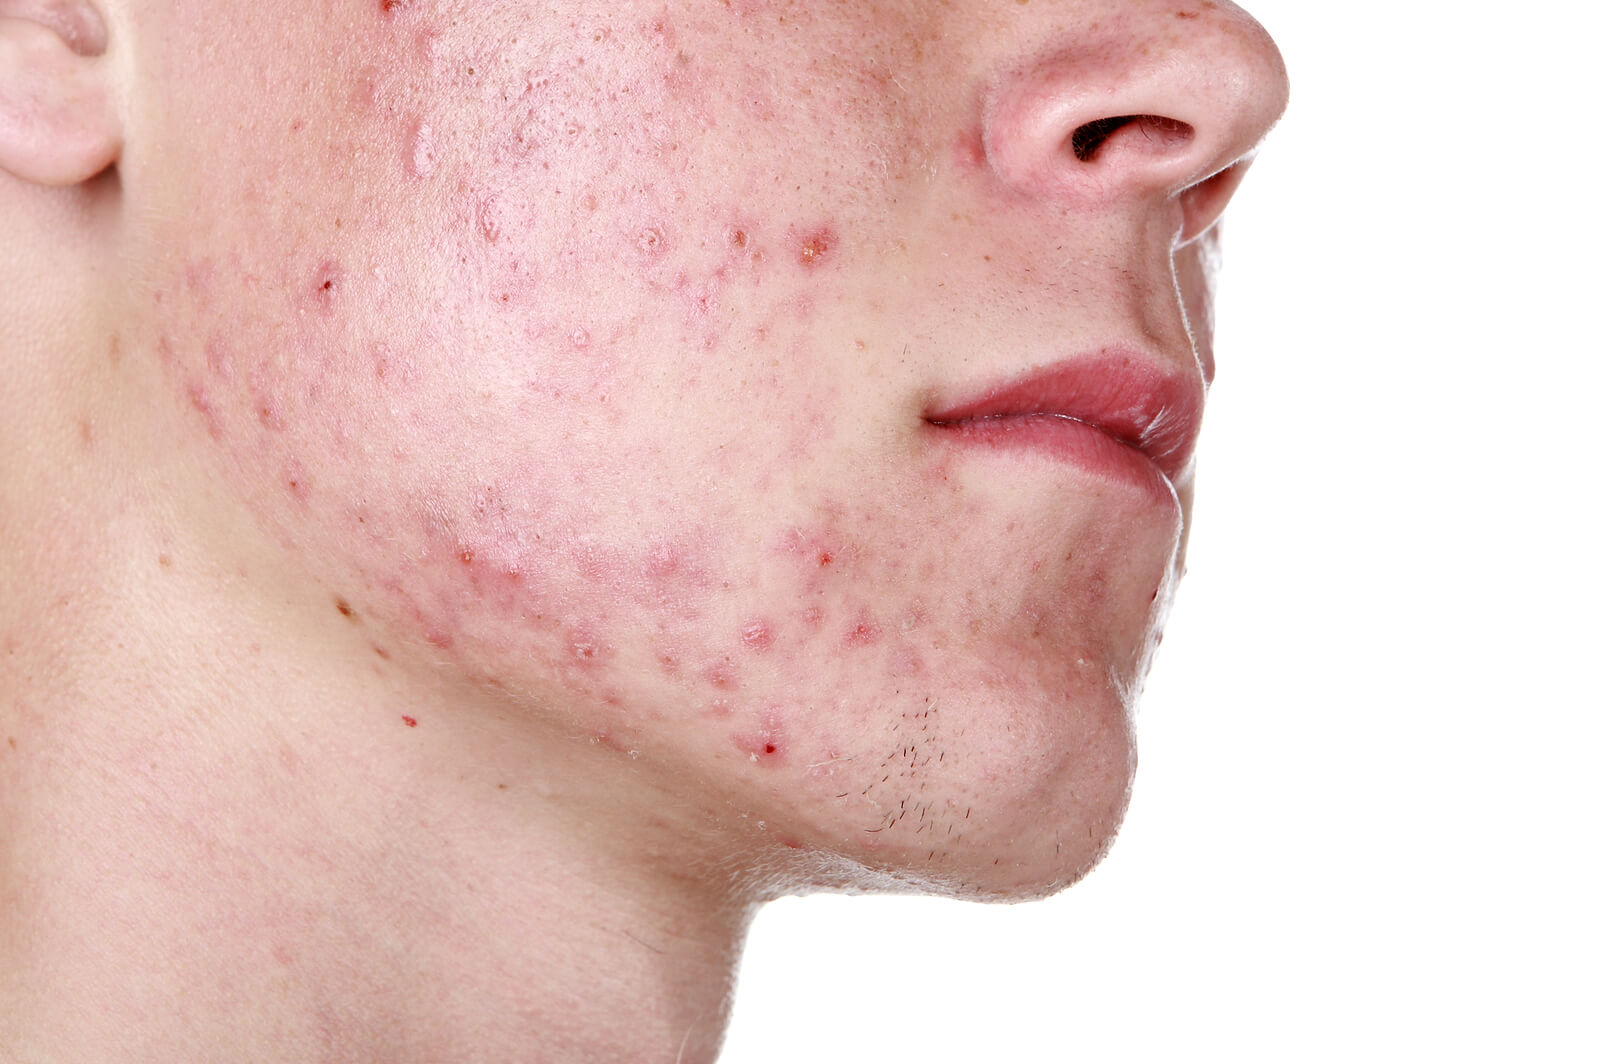 Le lesioni dell'acne nodulo cistica sono più profonde